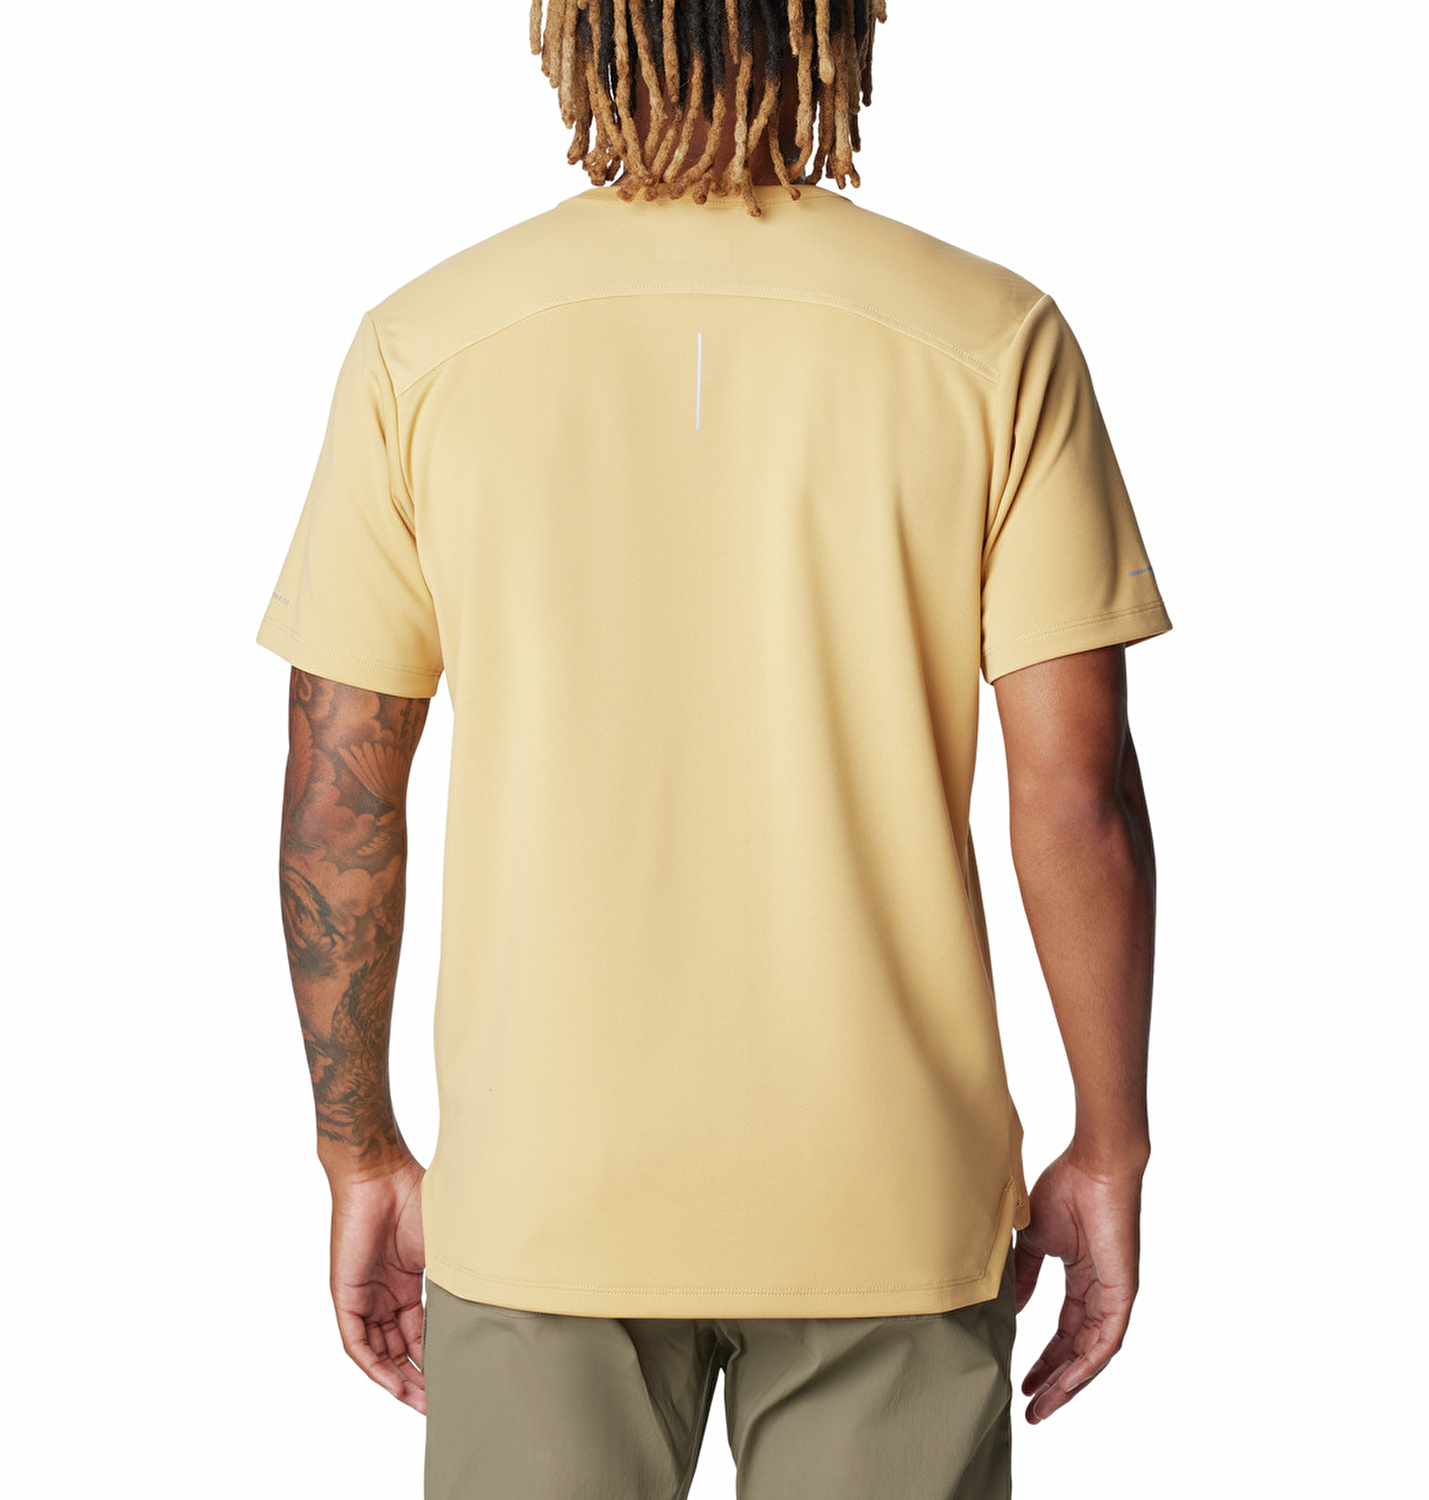 Black Mesa Erkek Kısa Kollu T-Shirt